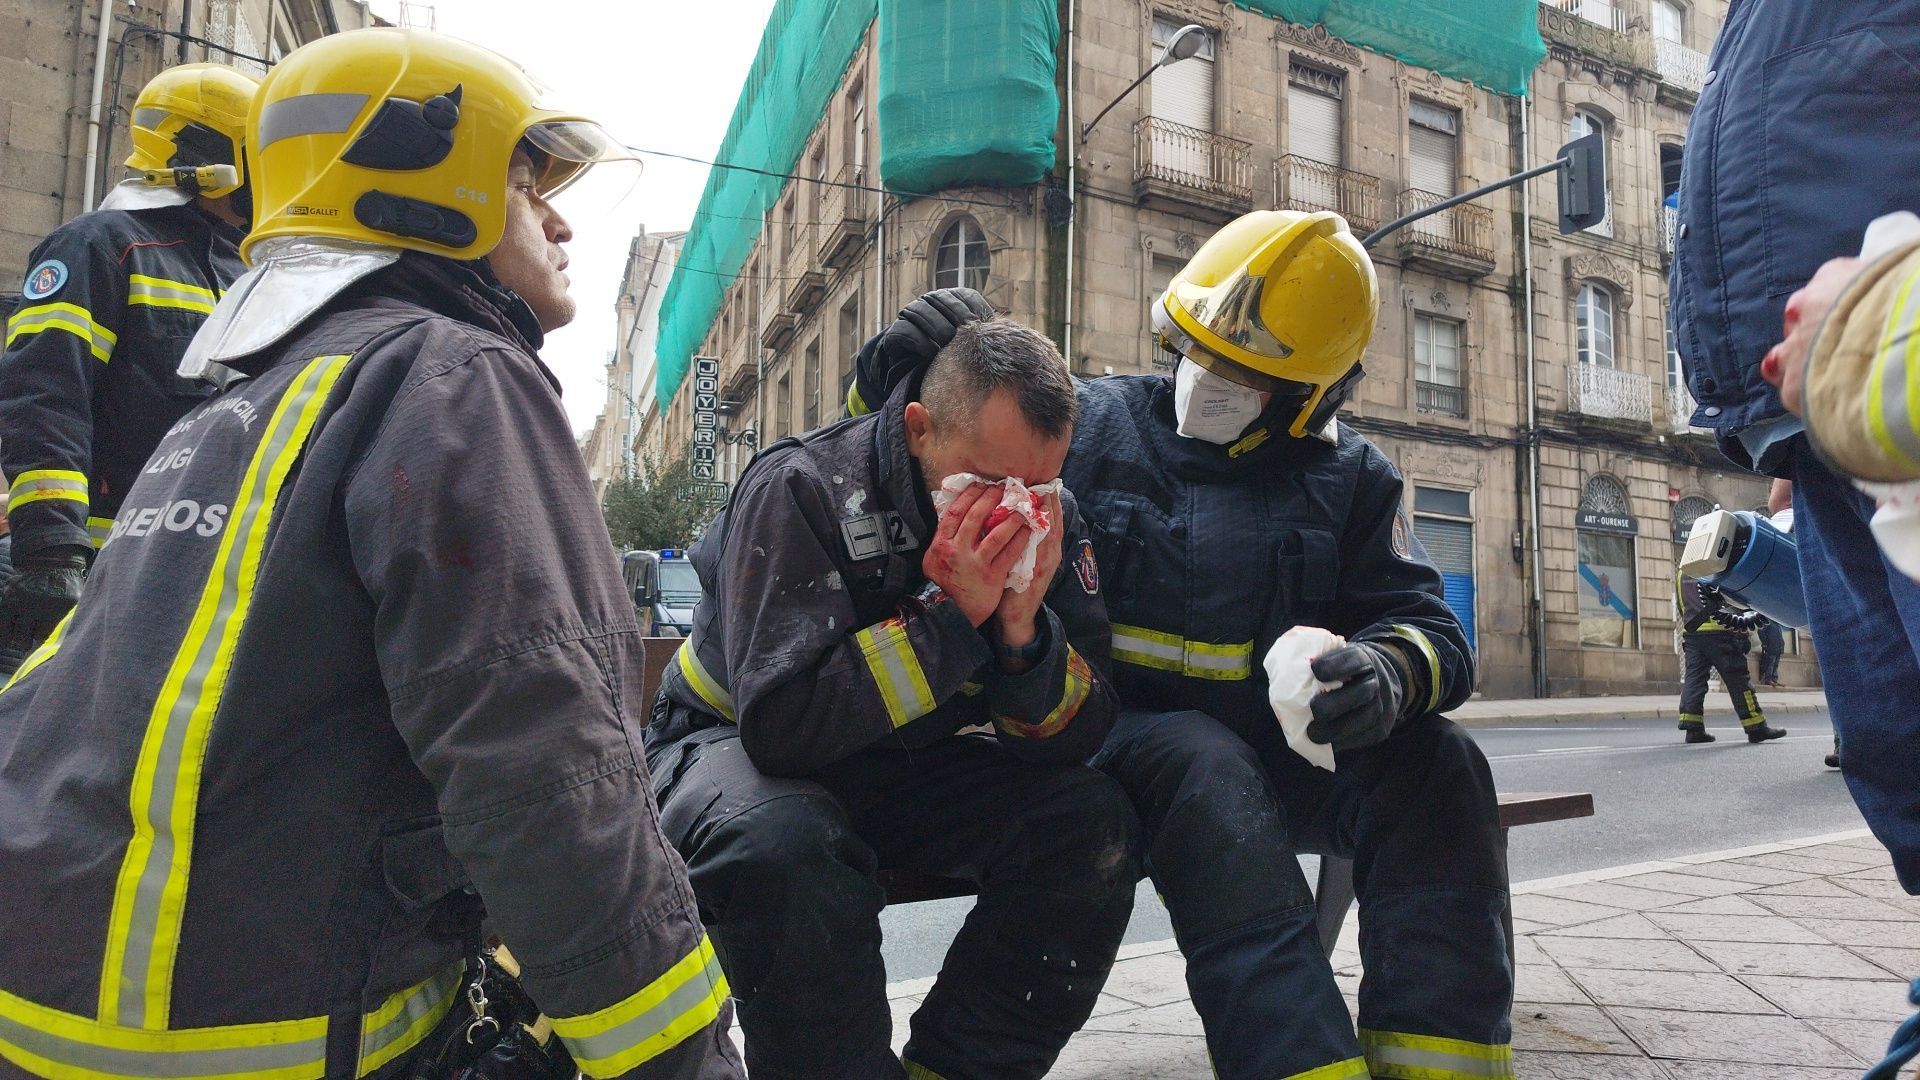 Protesta muy intensa de los bomberos ante la Diputación de Ourense